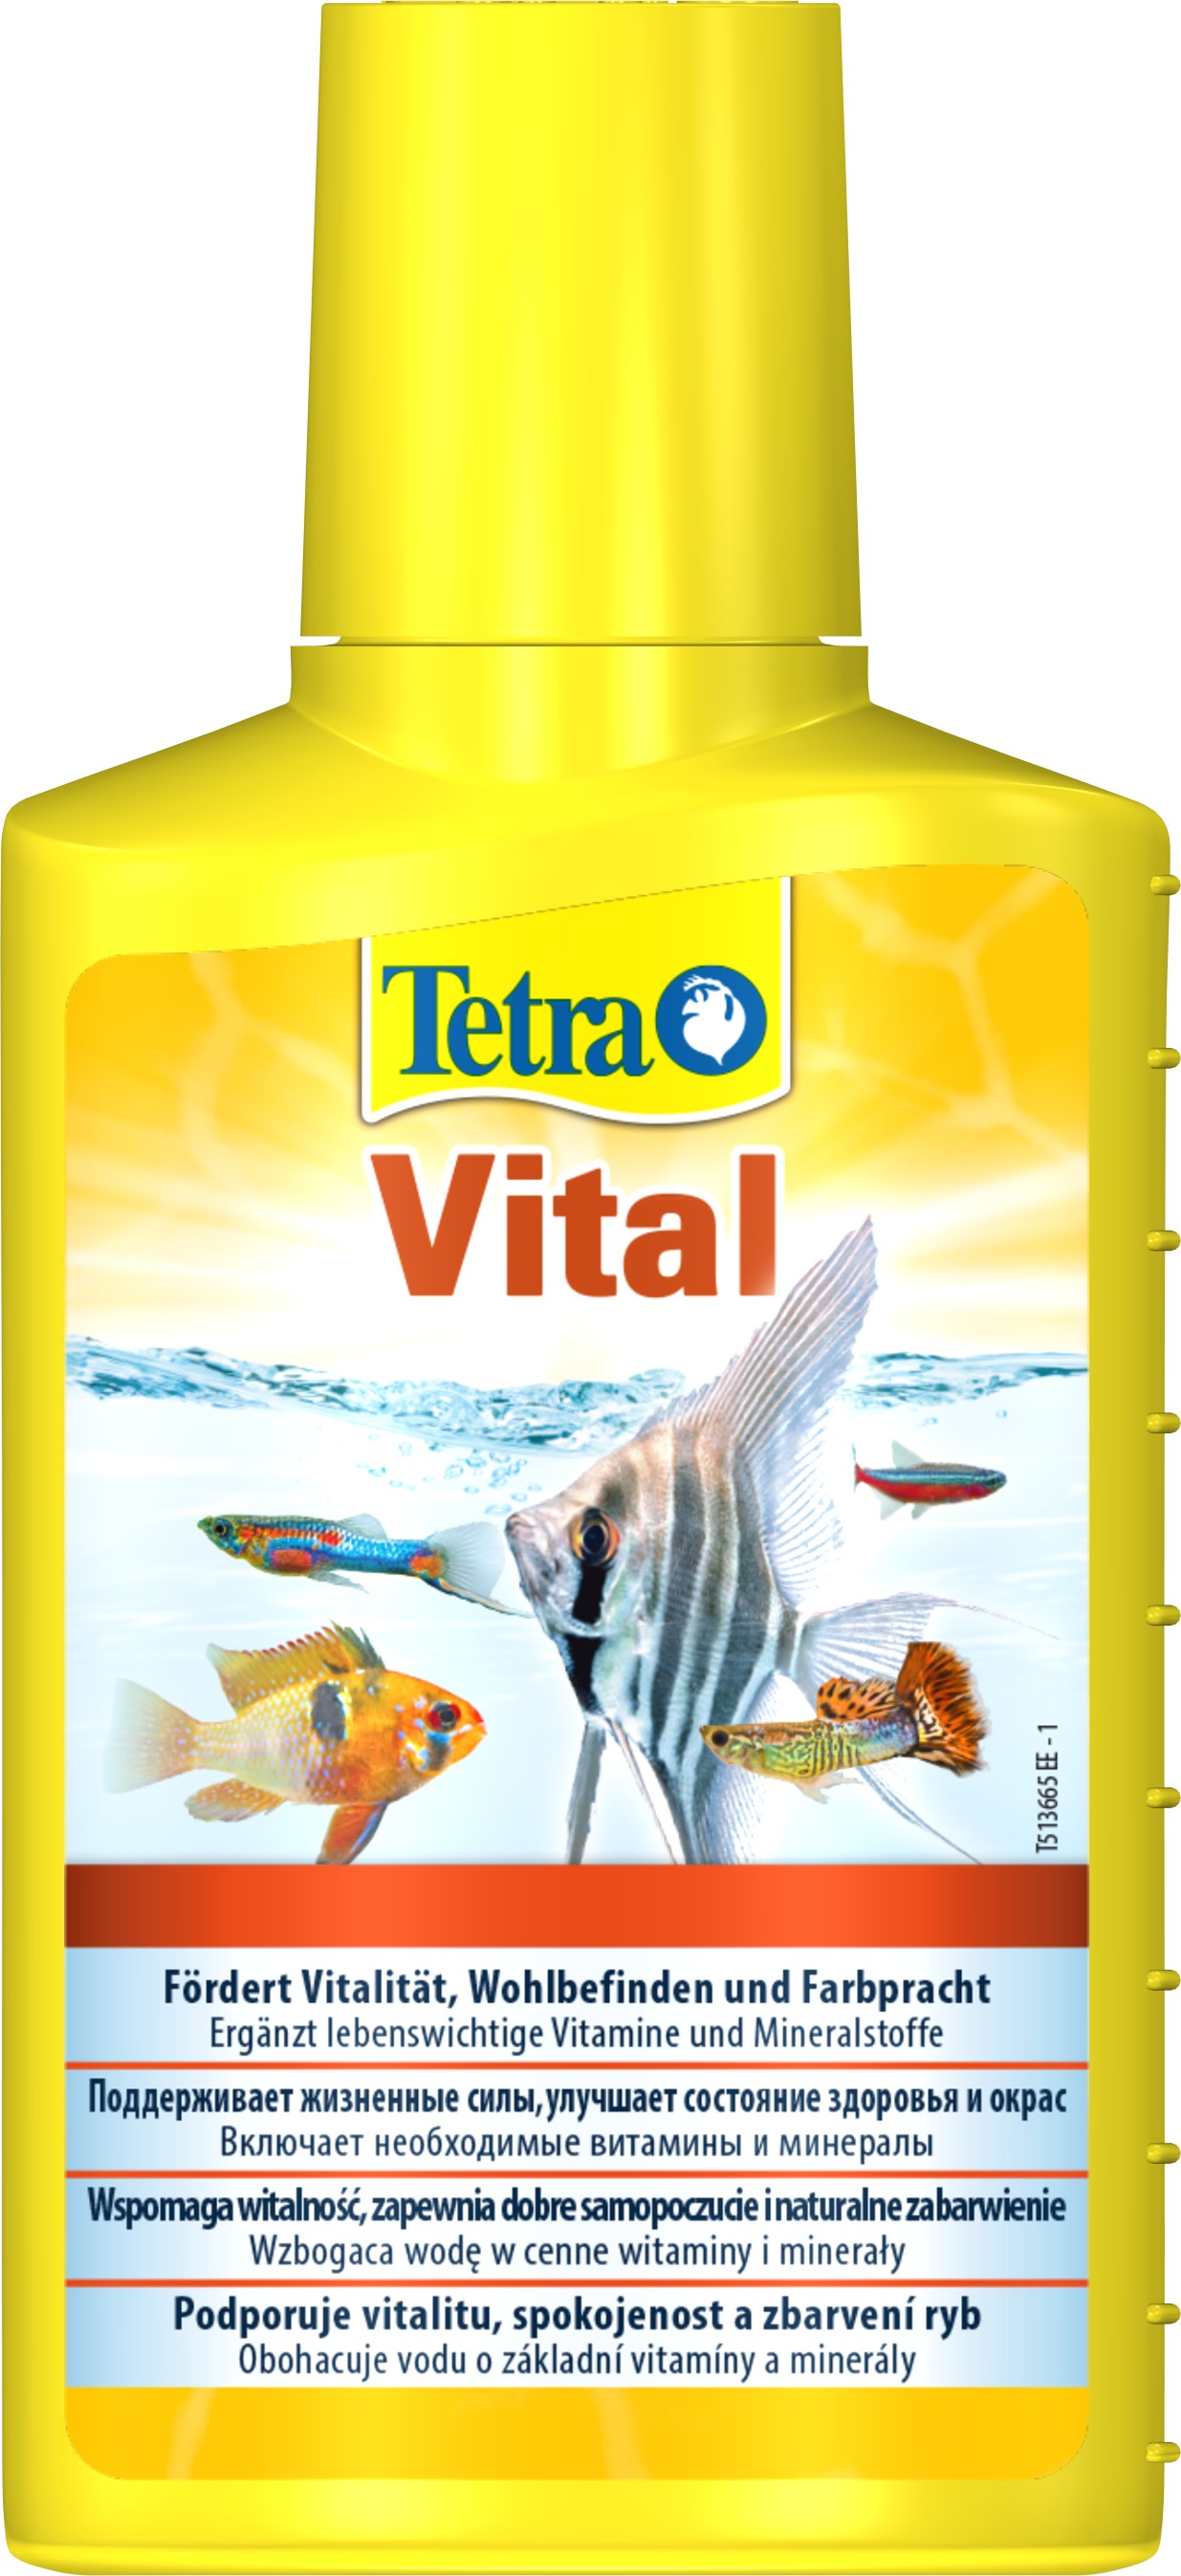 Вітамінізований кондиціонер Tetra Aqua Vital, на 200 л акваріумної води, 100 мл (139237) - фото 1